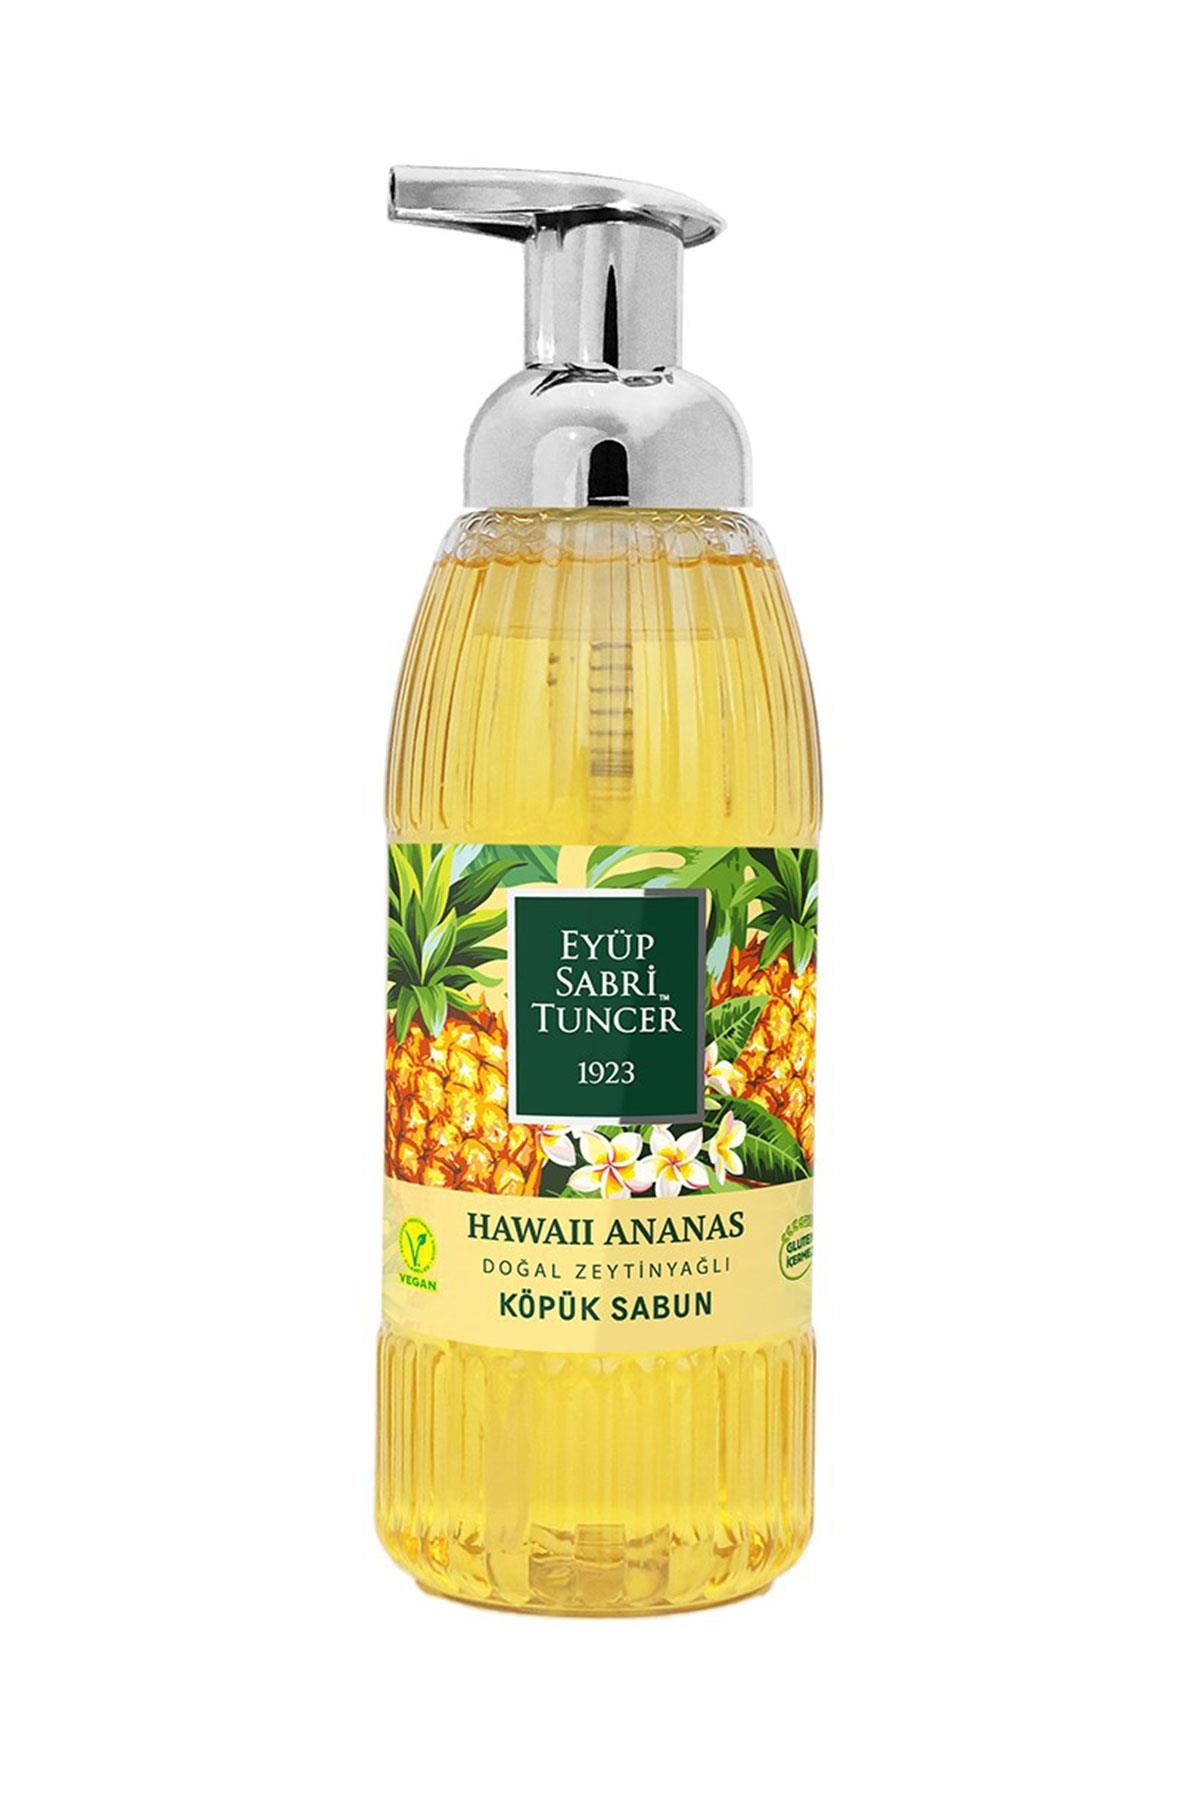 Eyüp Sabri Tuncer Hawaii Ananas Köpük Sabun 500ml